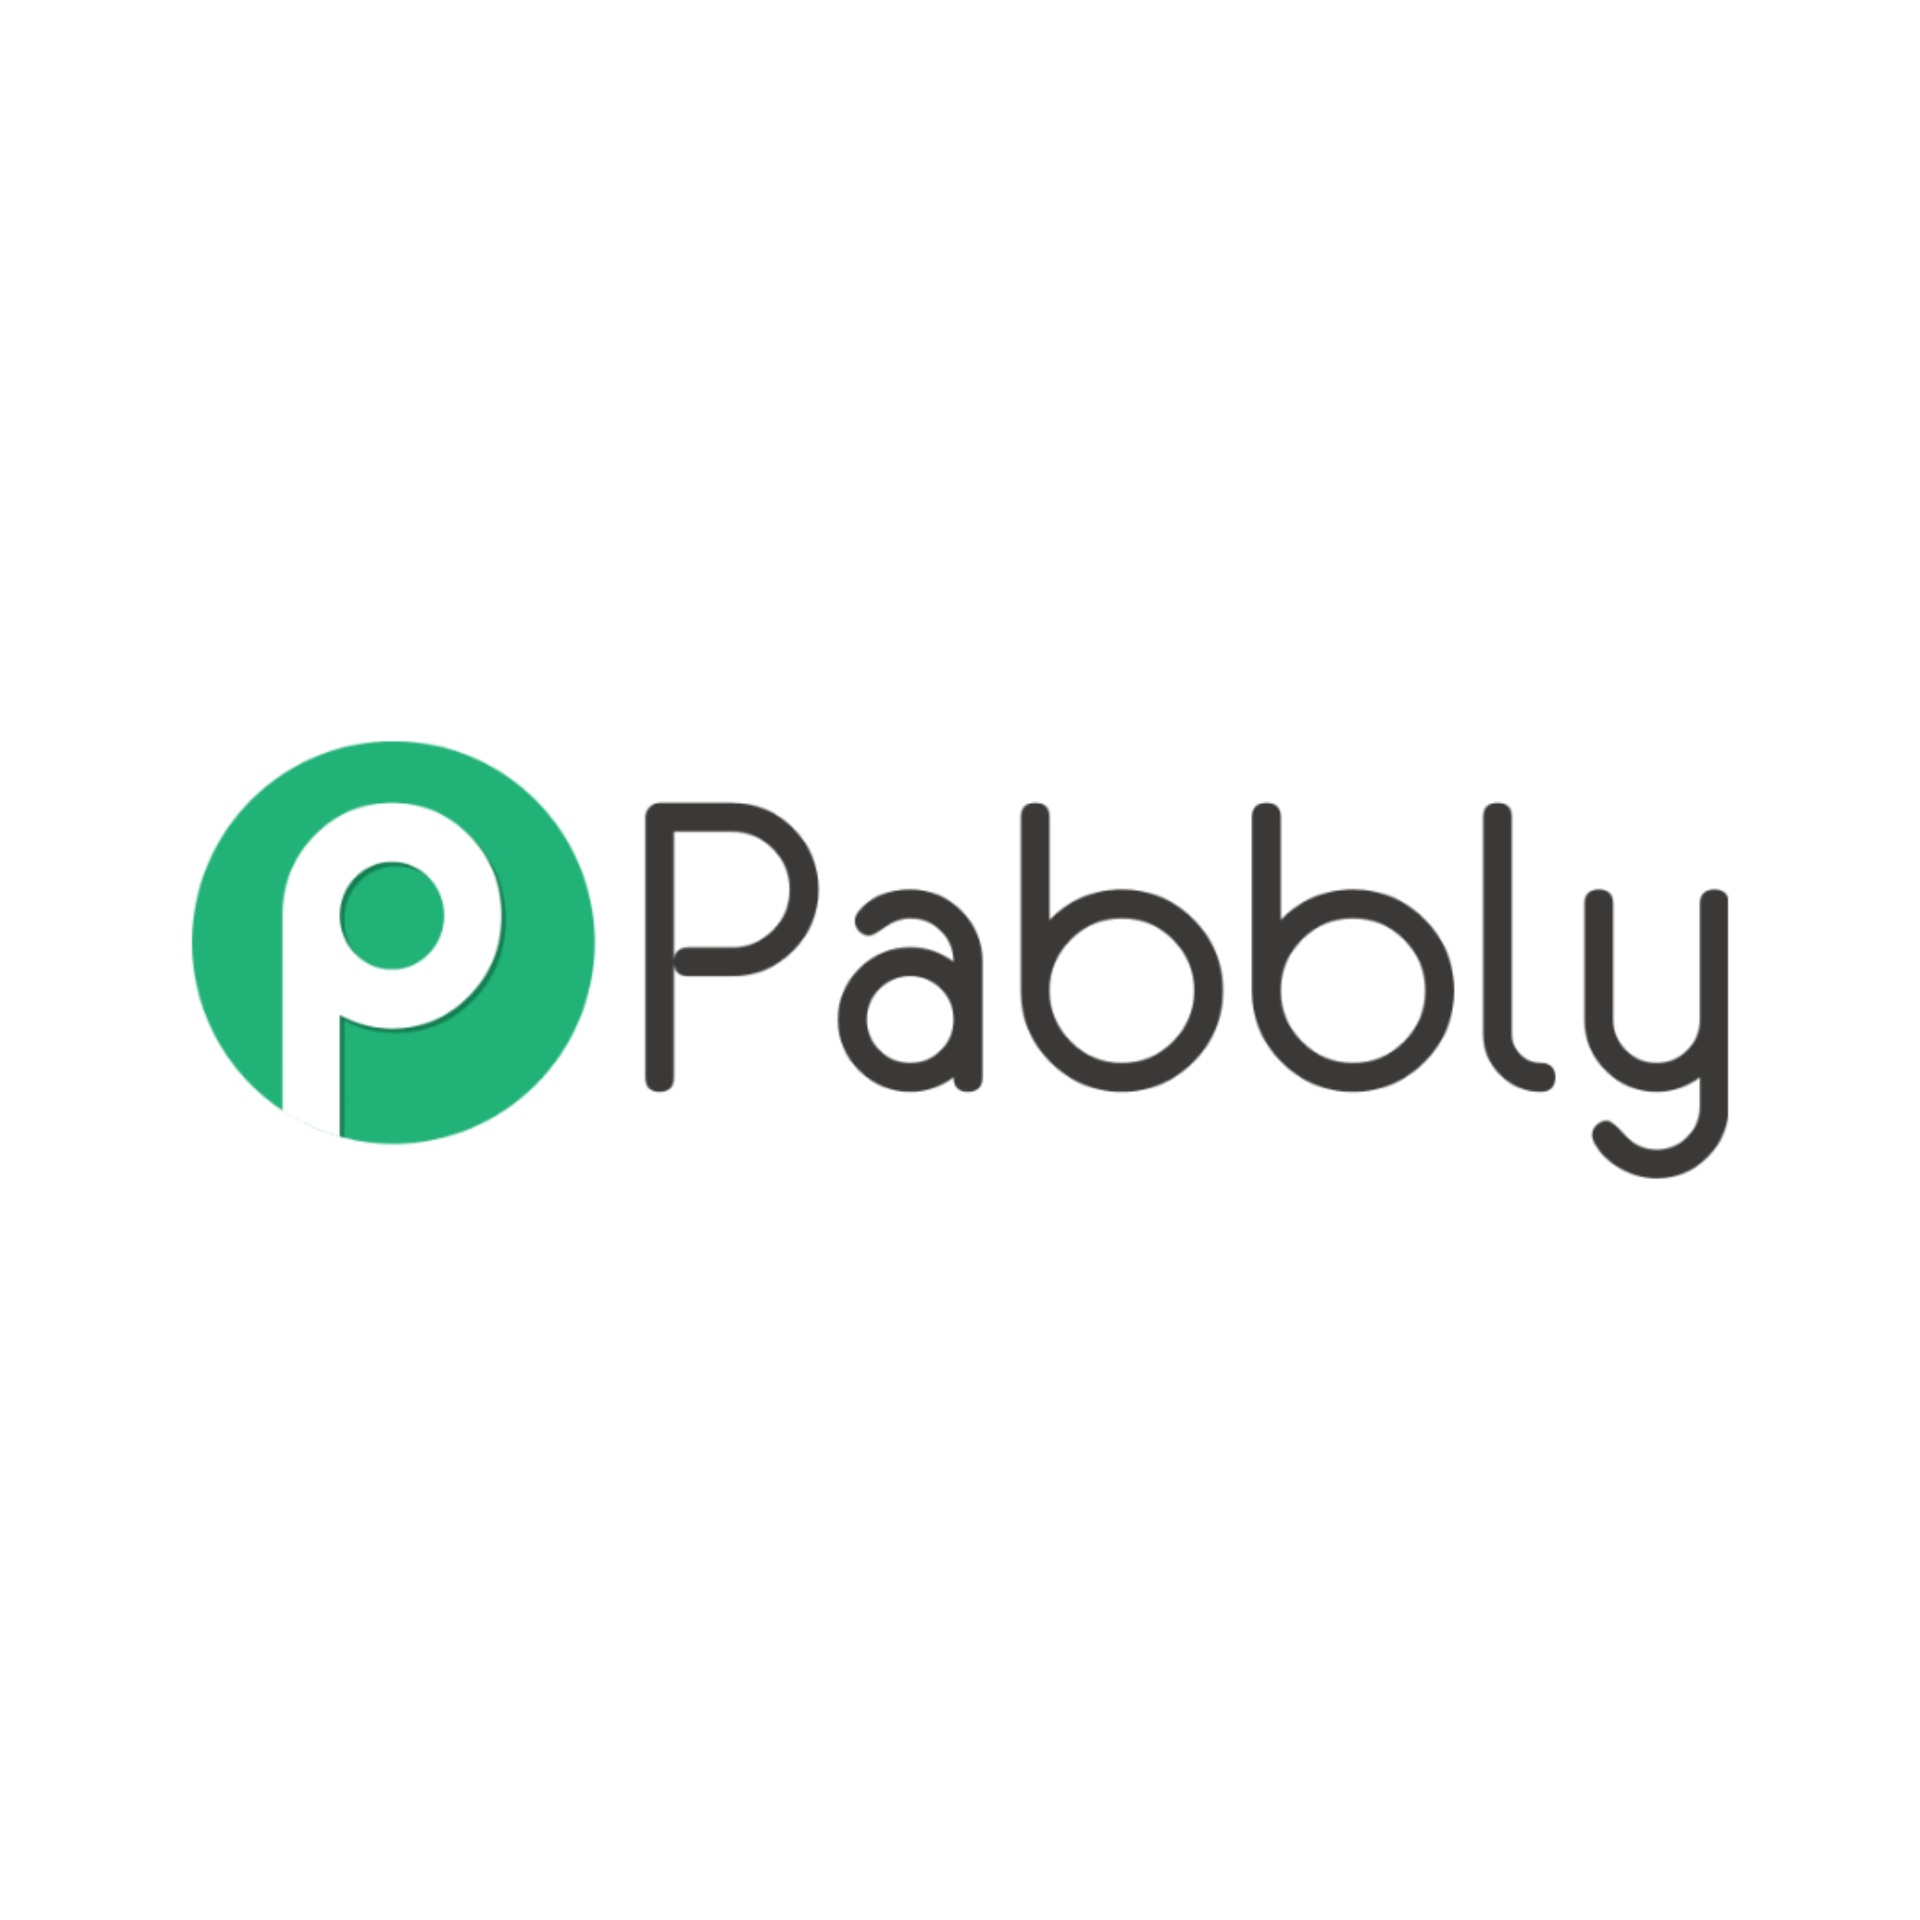 Pabbly